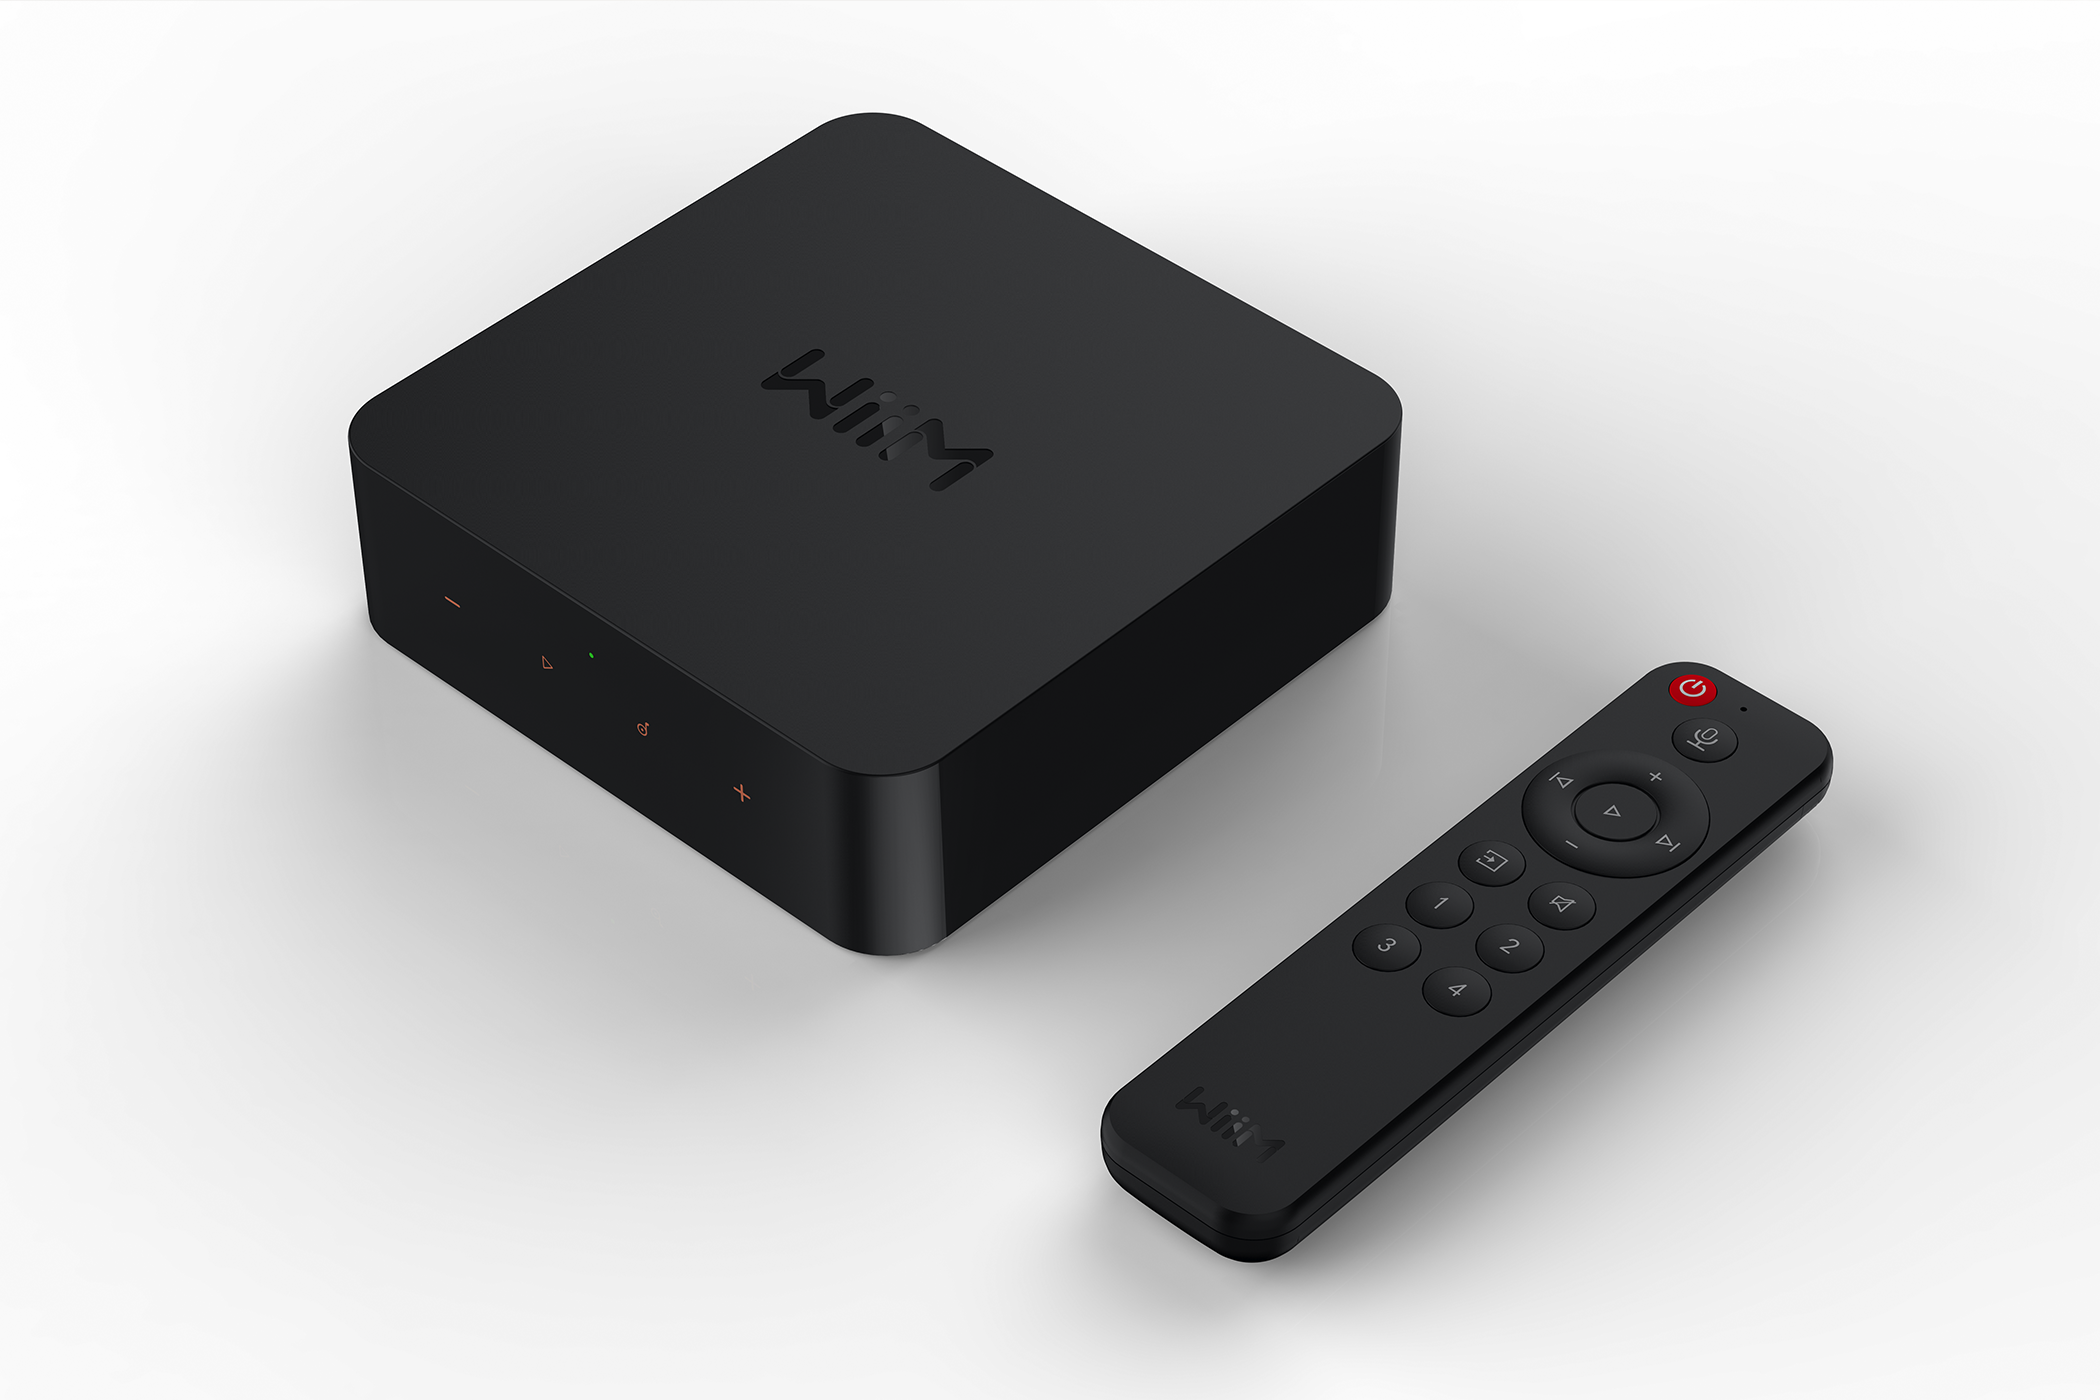 WiiM Pro Plus audio streamer box and remote.